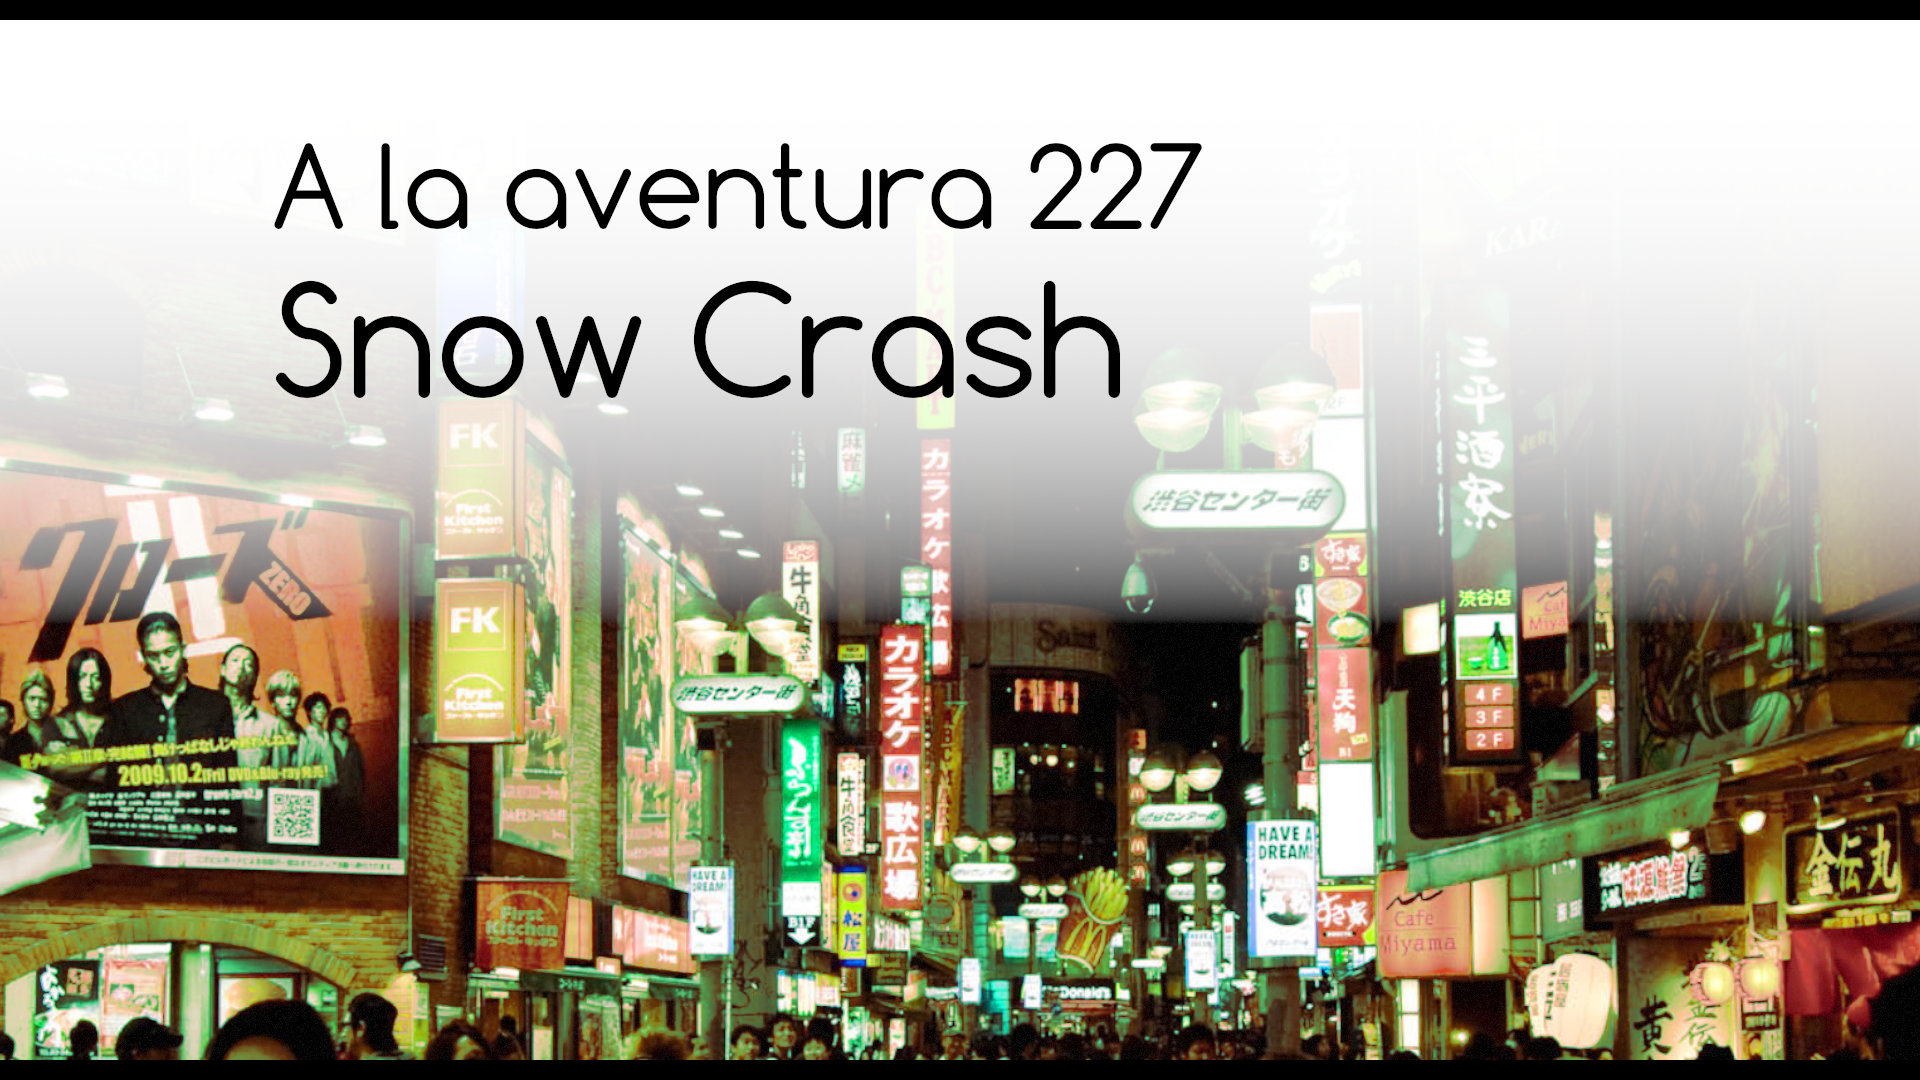 227: Snow Crash